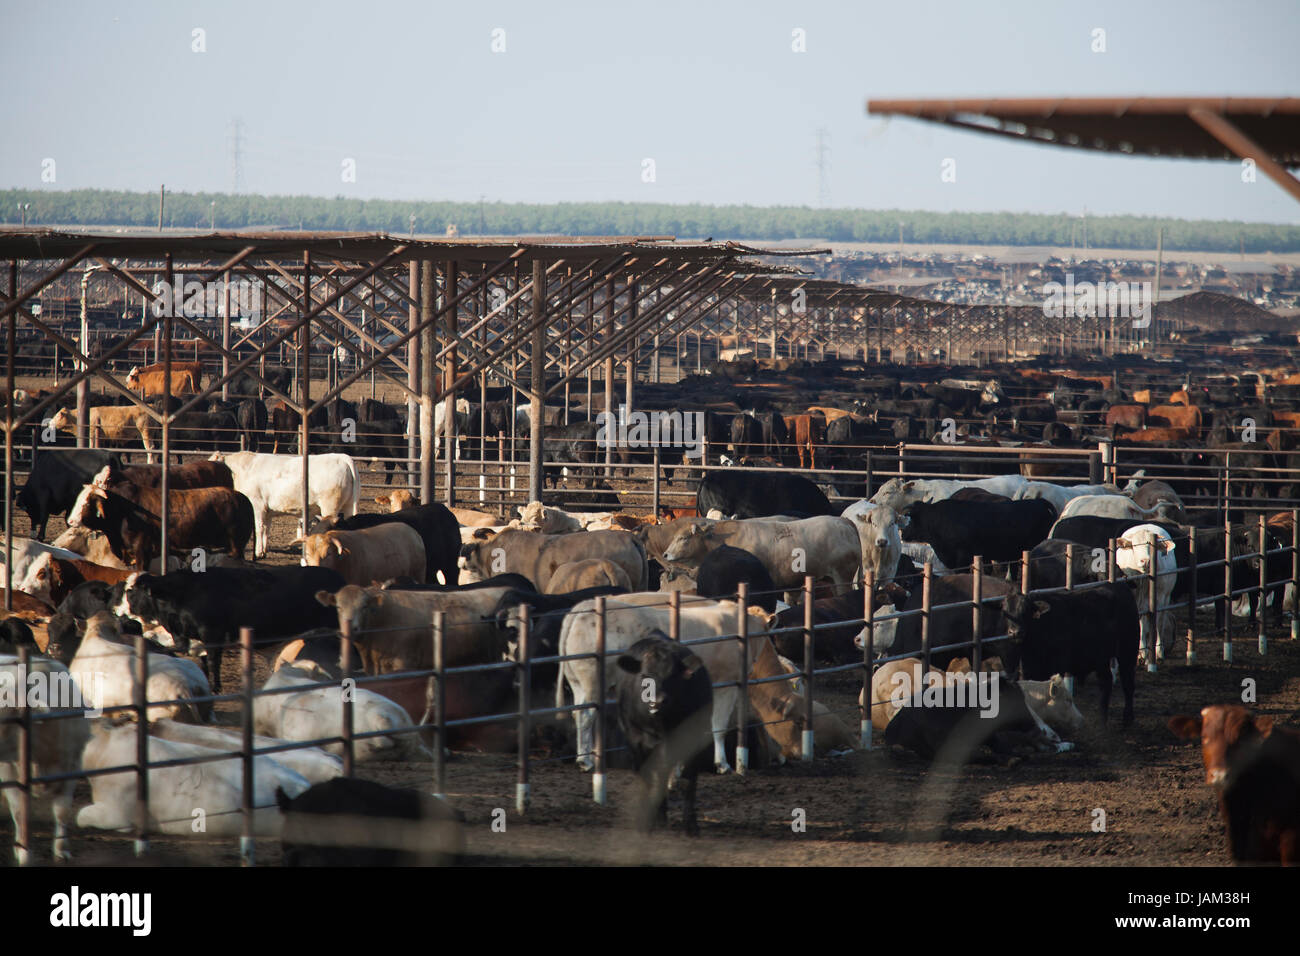 Large scale cattle farm - California USA Stock Photo